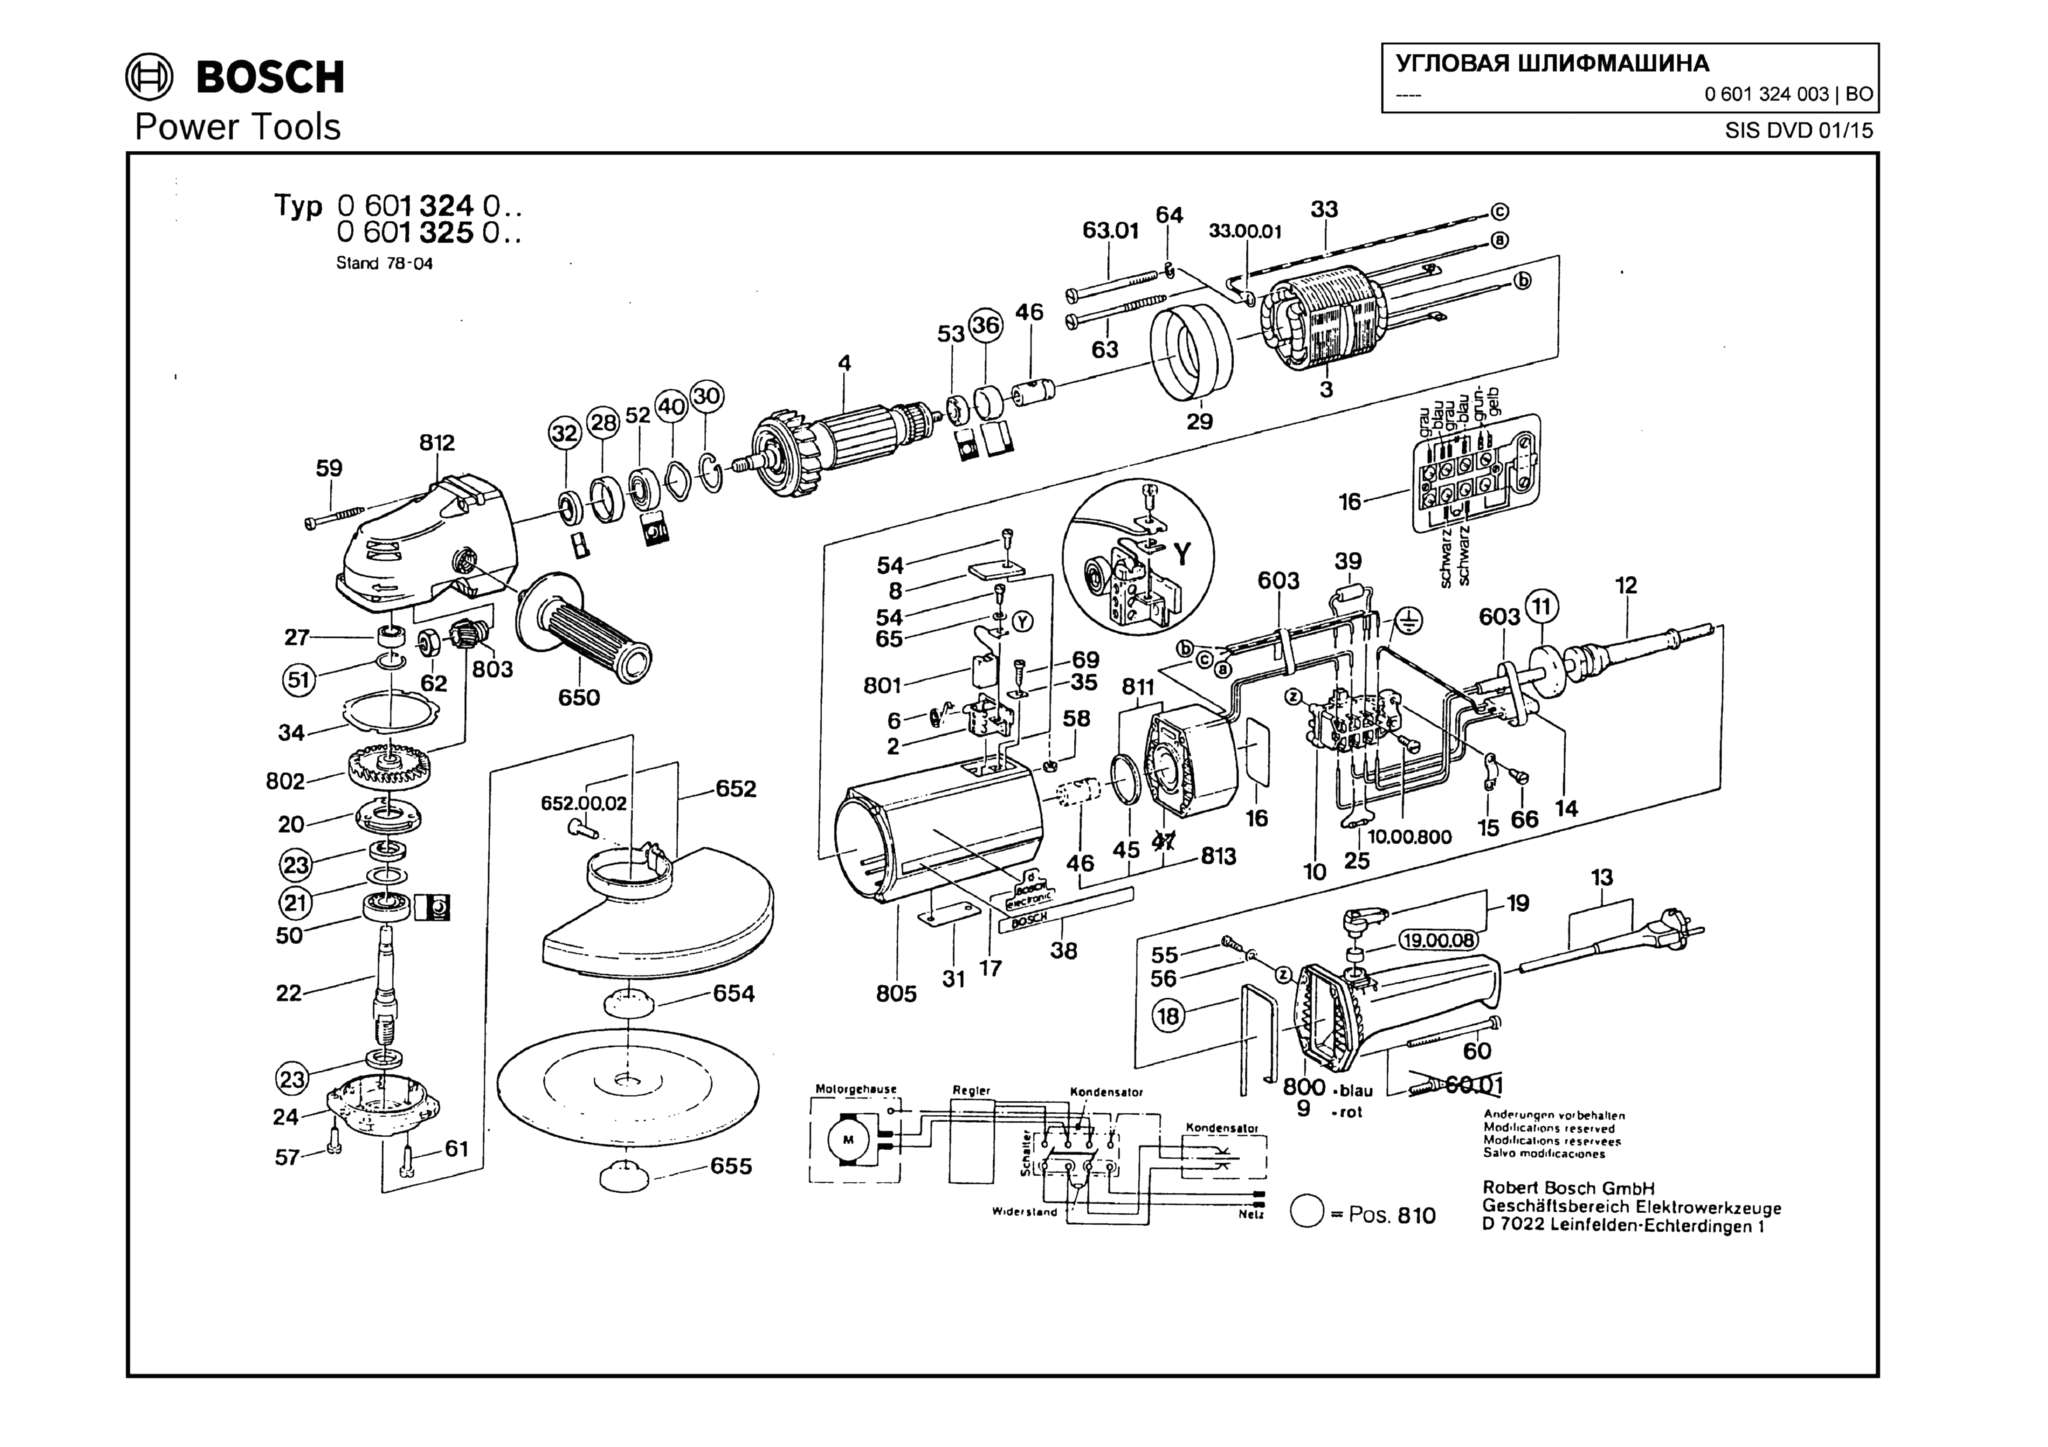 Запчасти, схема и деталировка Bosch (ТИП 0601324003)